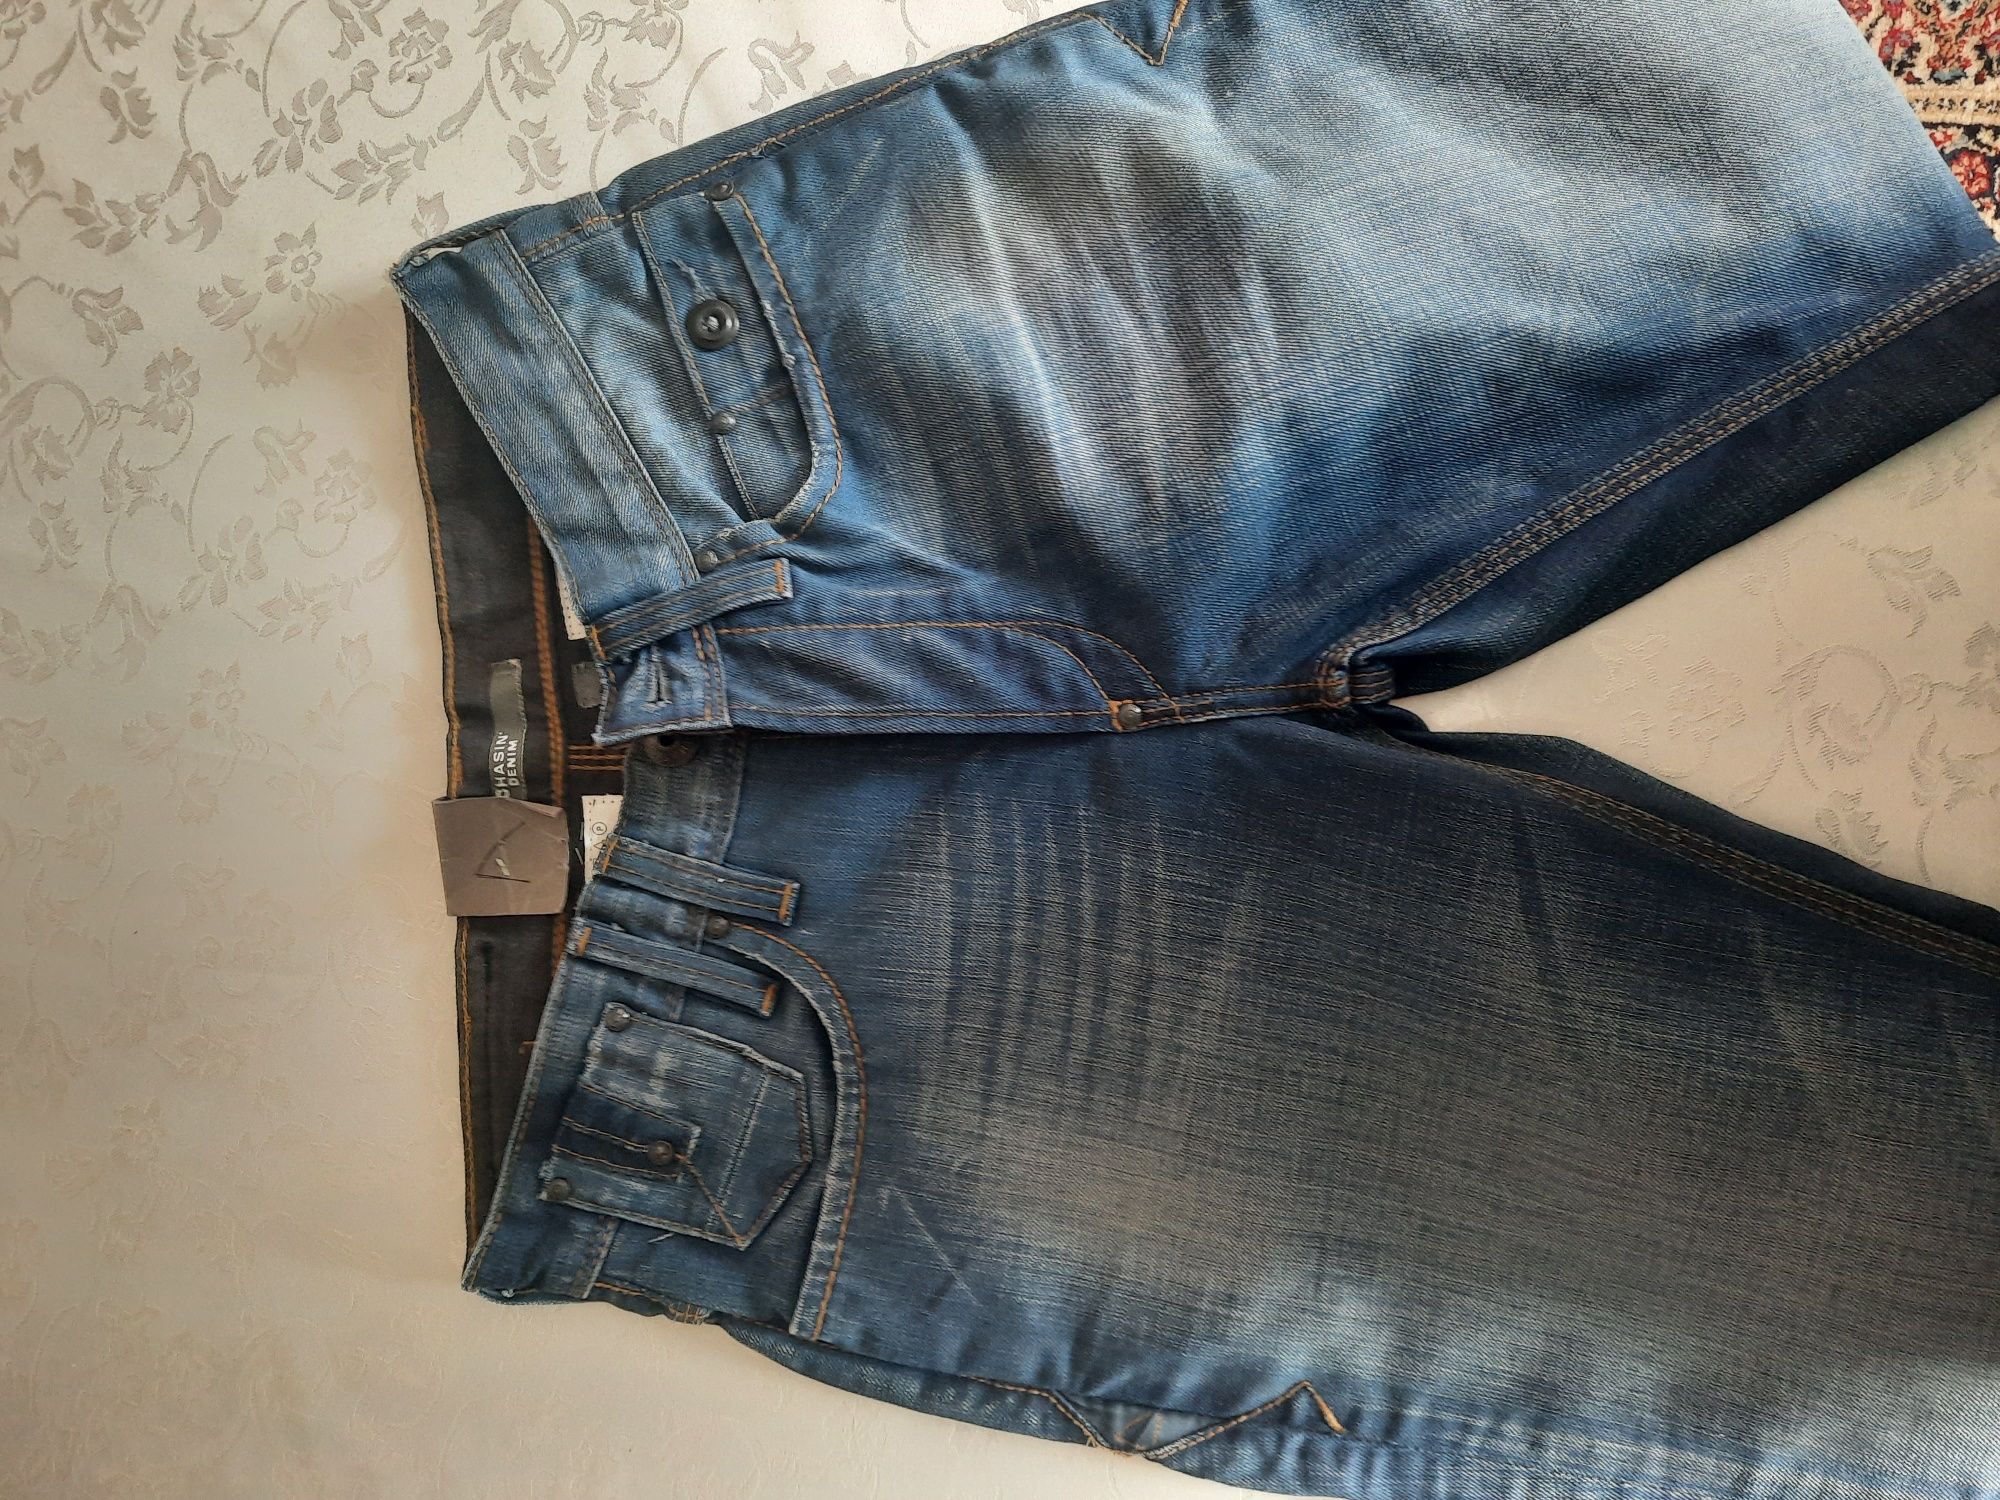 Плотные, качественные джинсы фирменые Chasin denim, Покупали в Европе